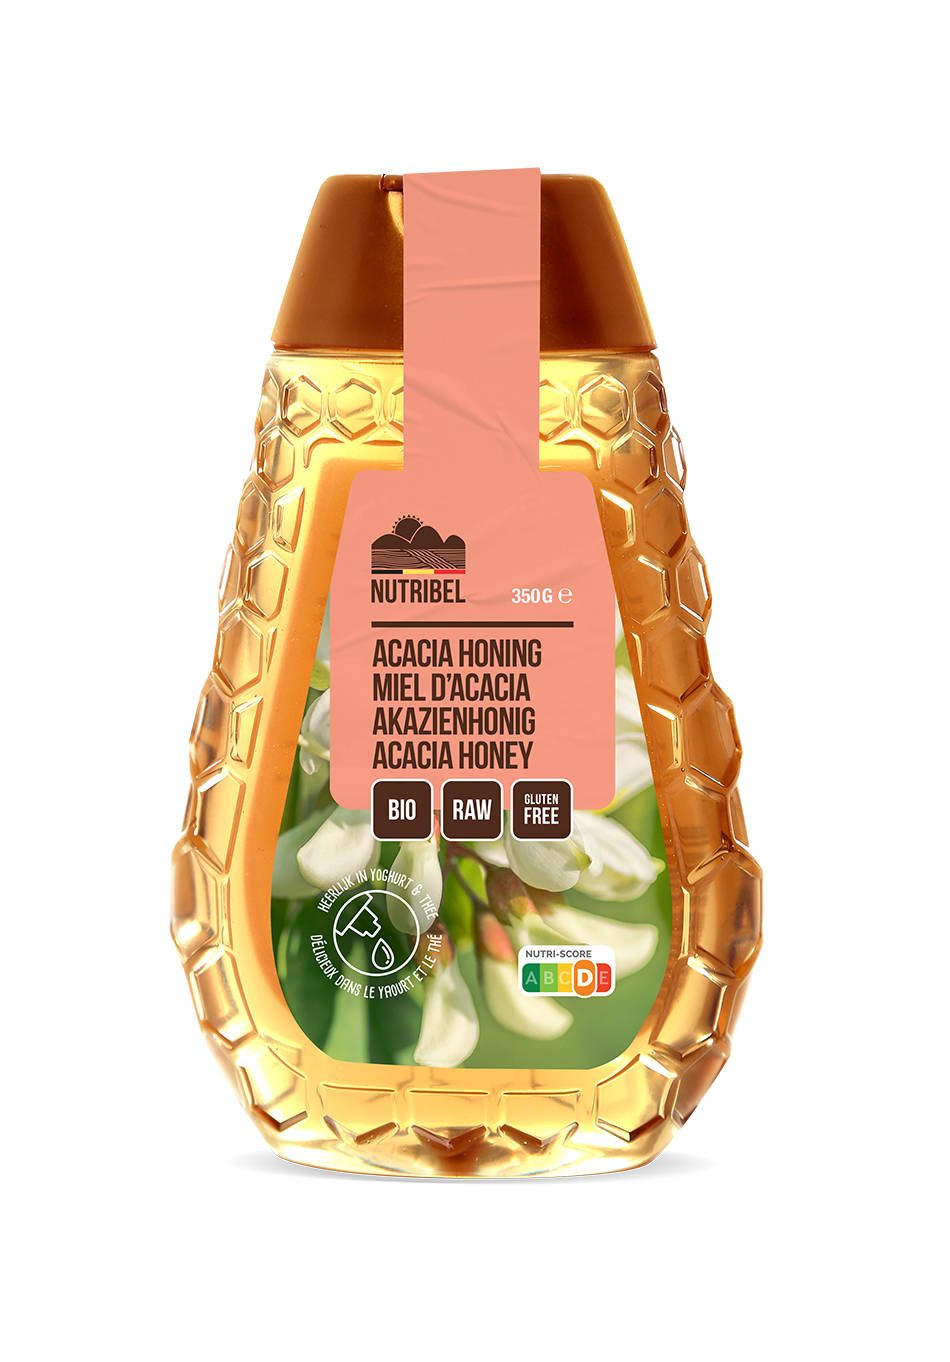 Nutribel Acacia honing bio 350g